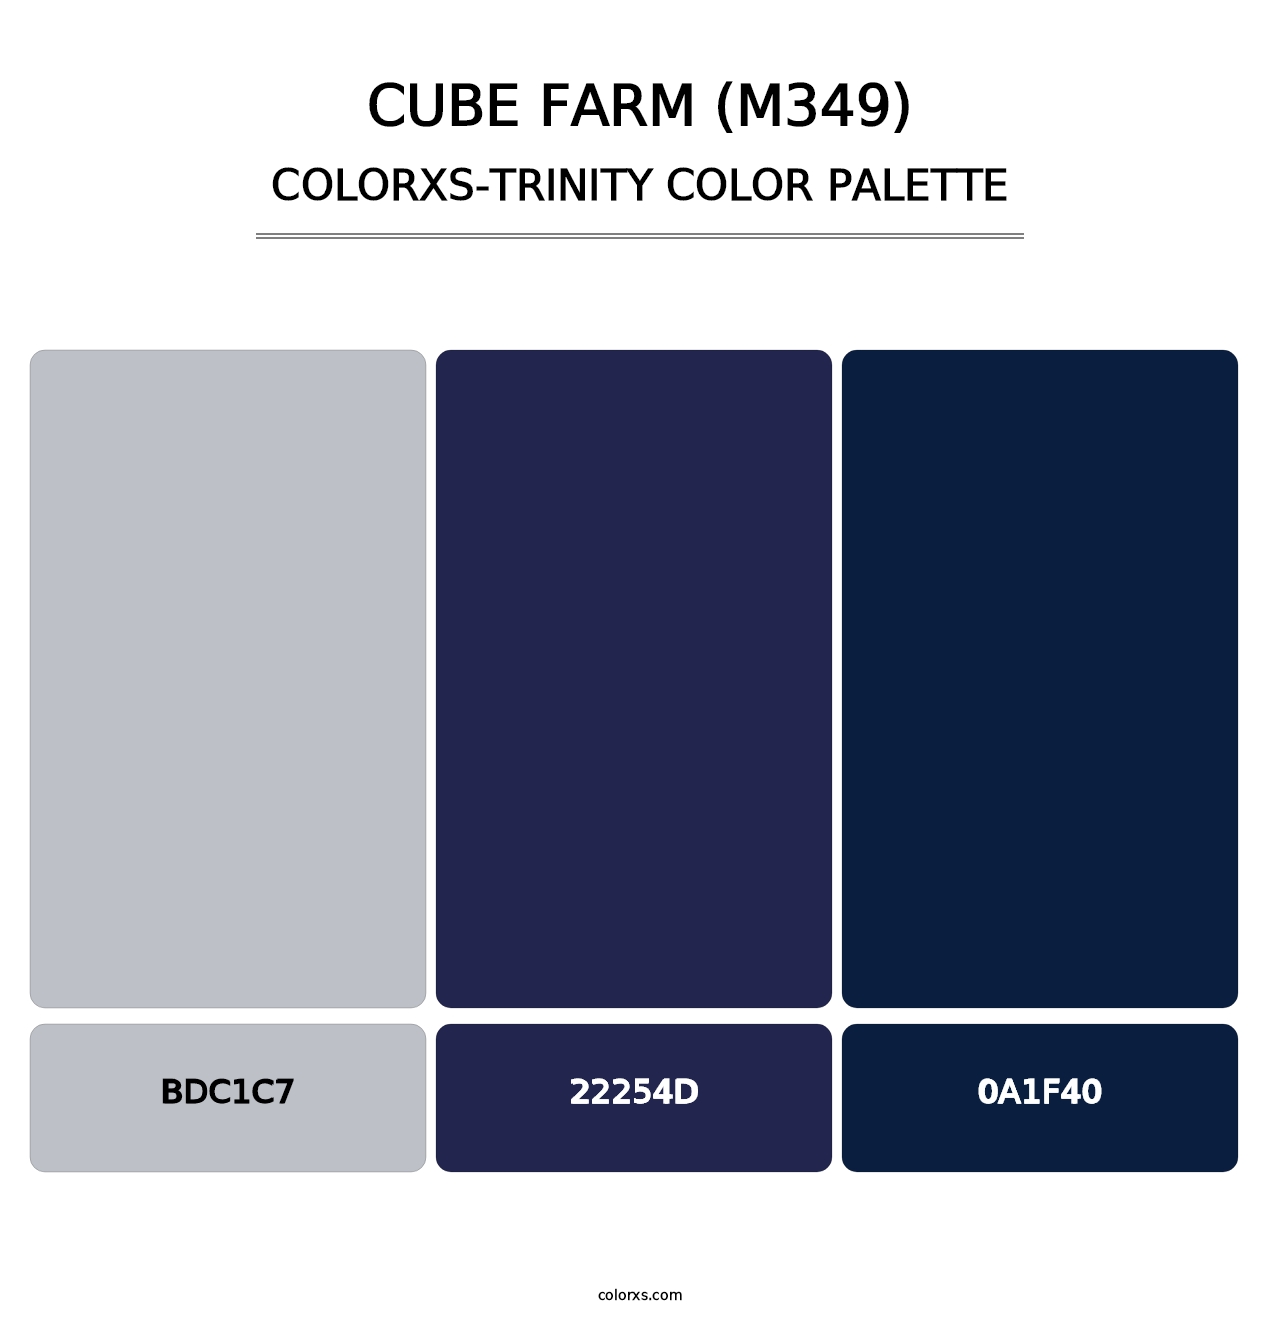 Cube Farm (M349) - Colorxs Trinity Palette